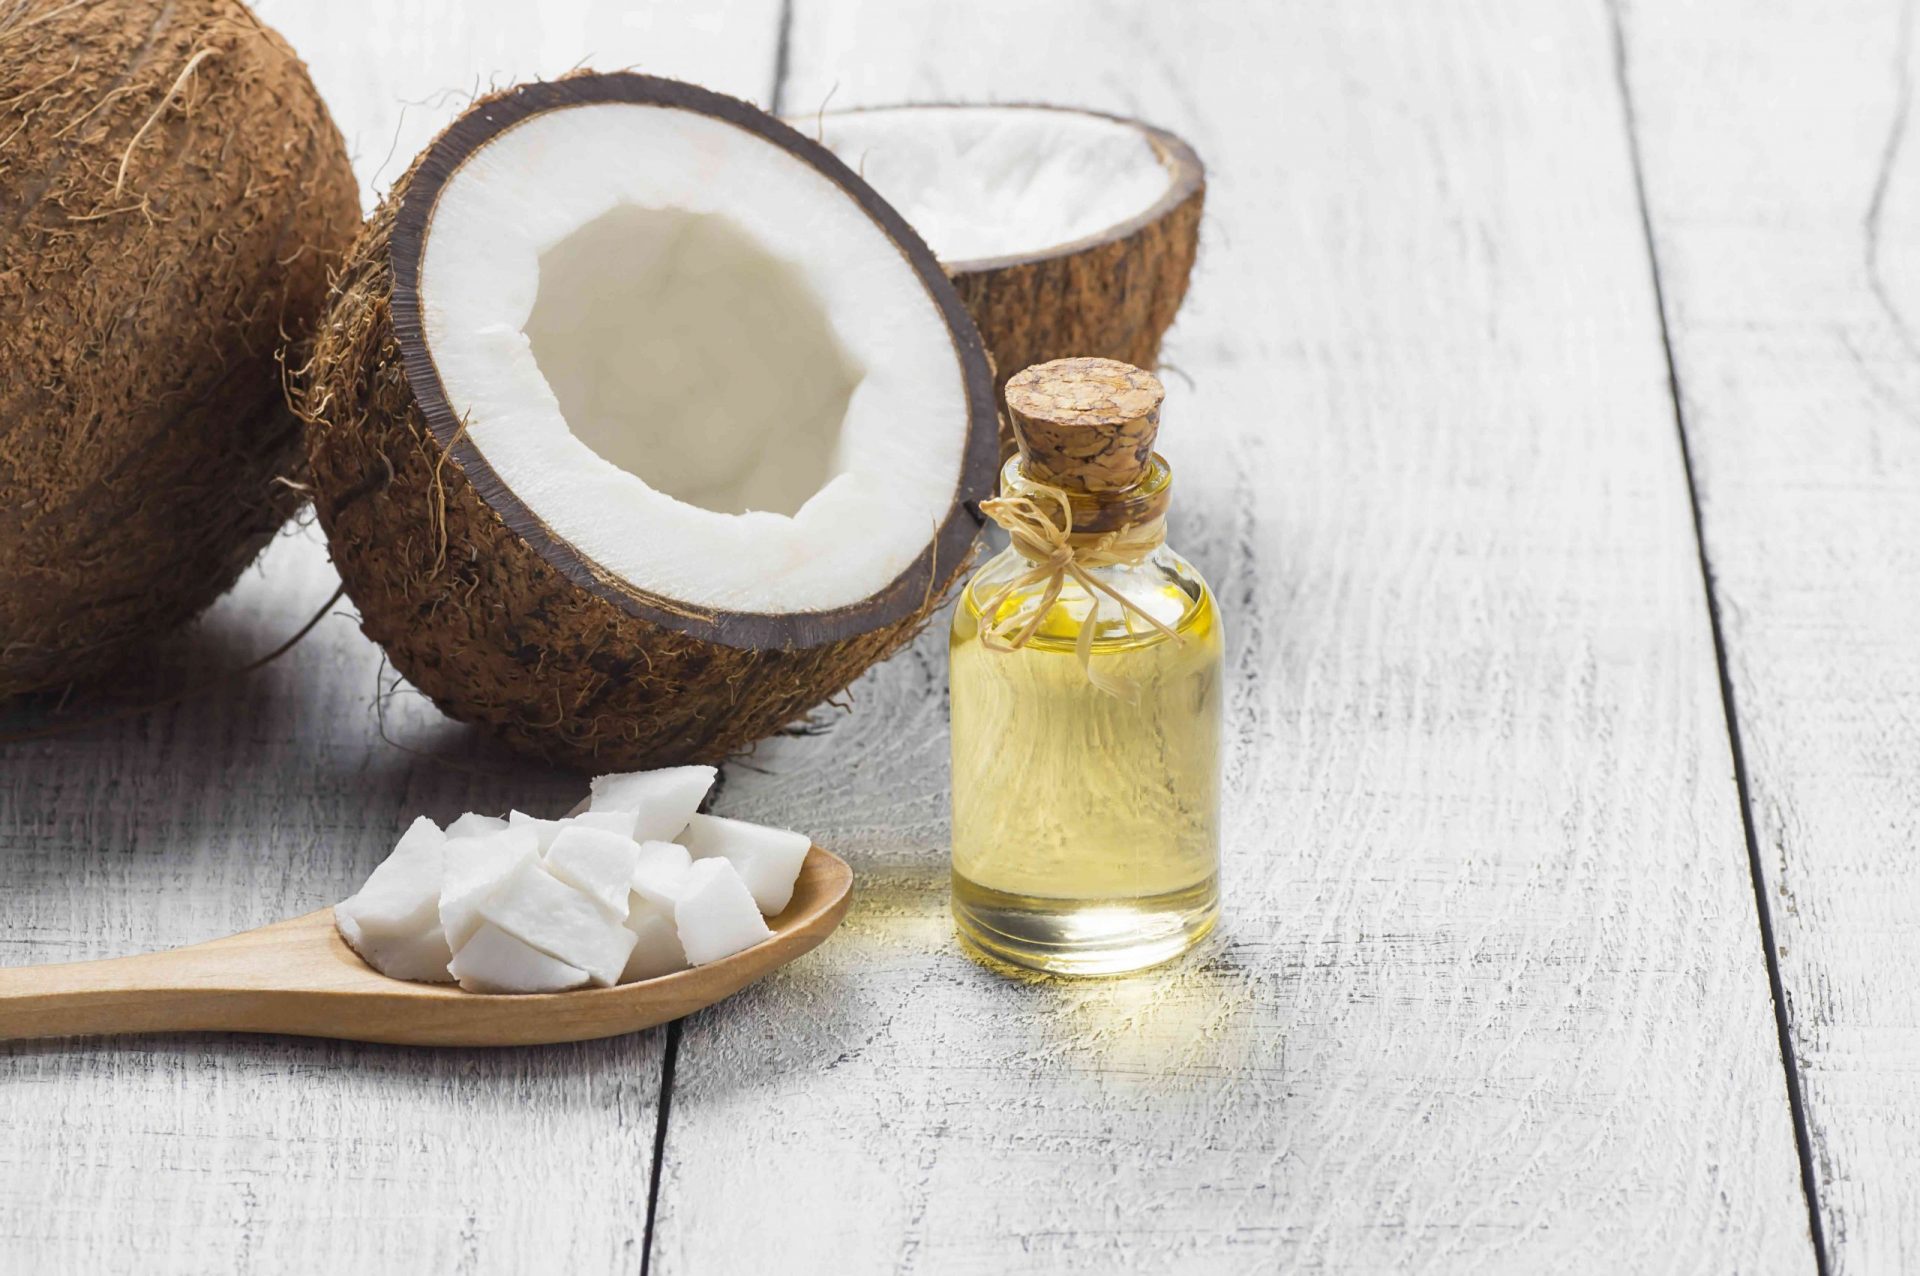 Botella de cristal de aceite de coco con fruta fresca de coco sobre fondo rústico, concepto de medicina terapéutica alternativa, Cocos nucifera